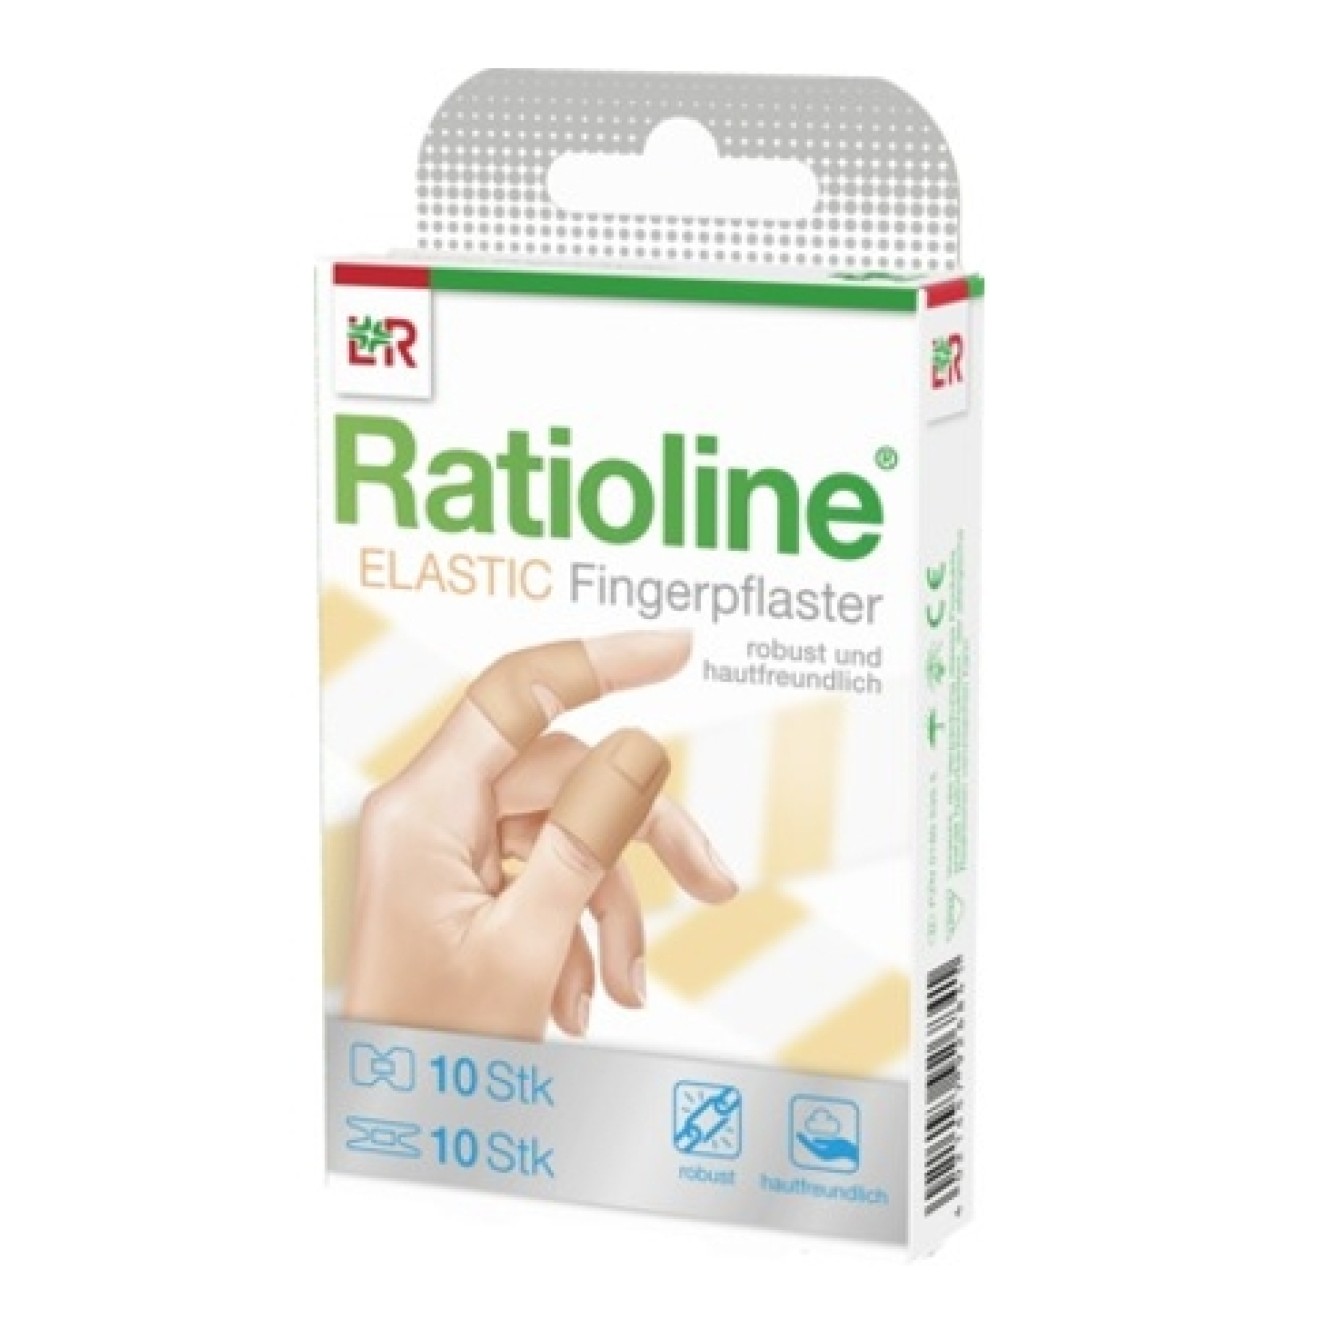 Ratioline Elastic Finger Dressing 2x12 cm 